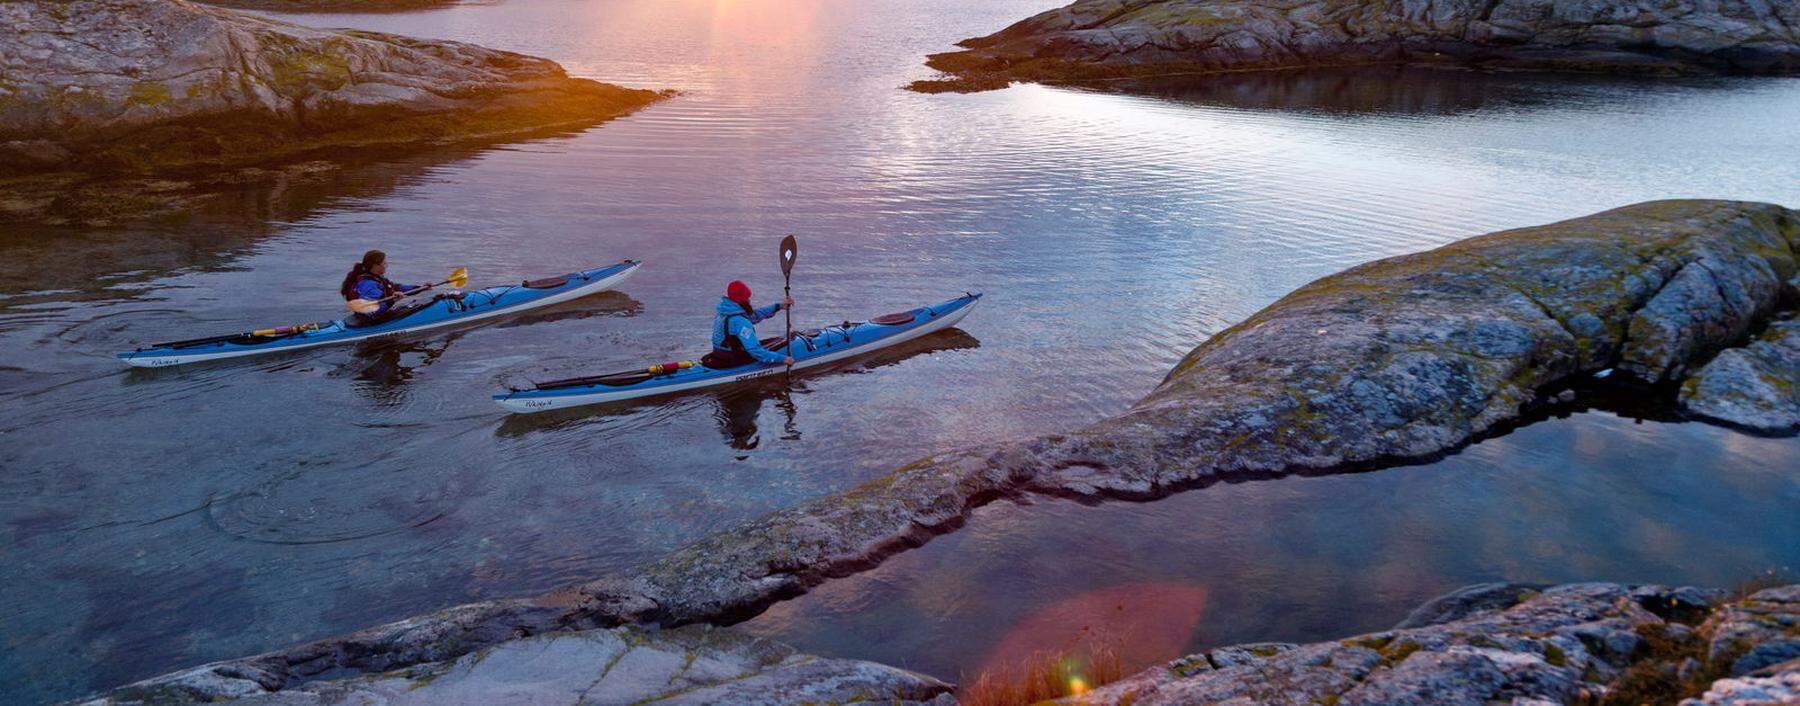 8000 Schären machen die Küste Westschwedens zu einem Labyrinth aus Wasserwegen. Am besten per Kajak erkunden.